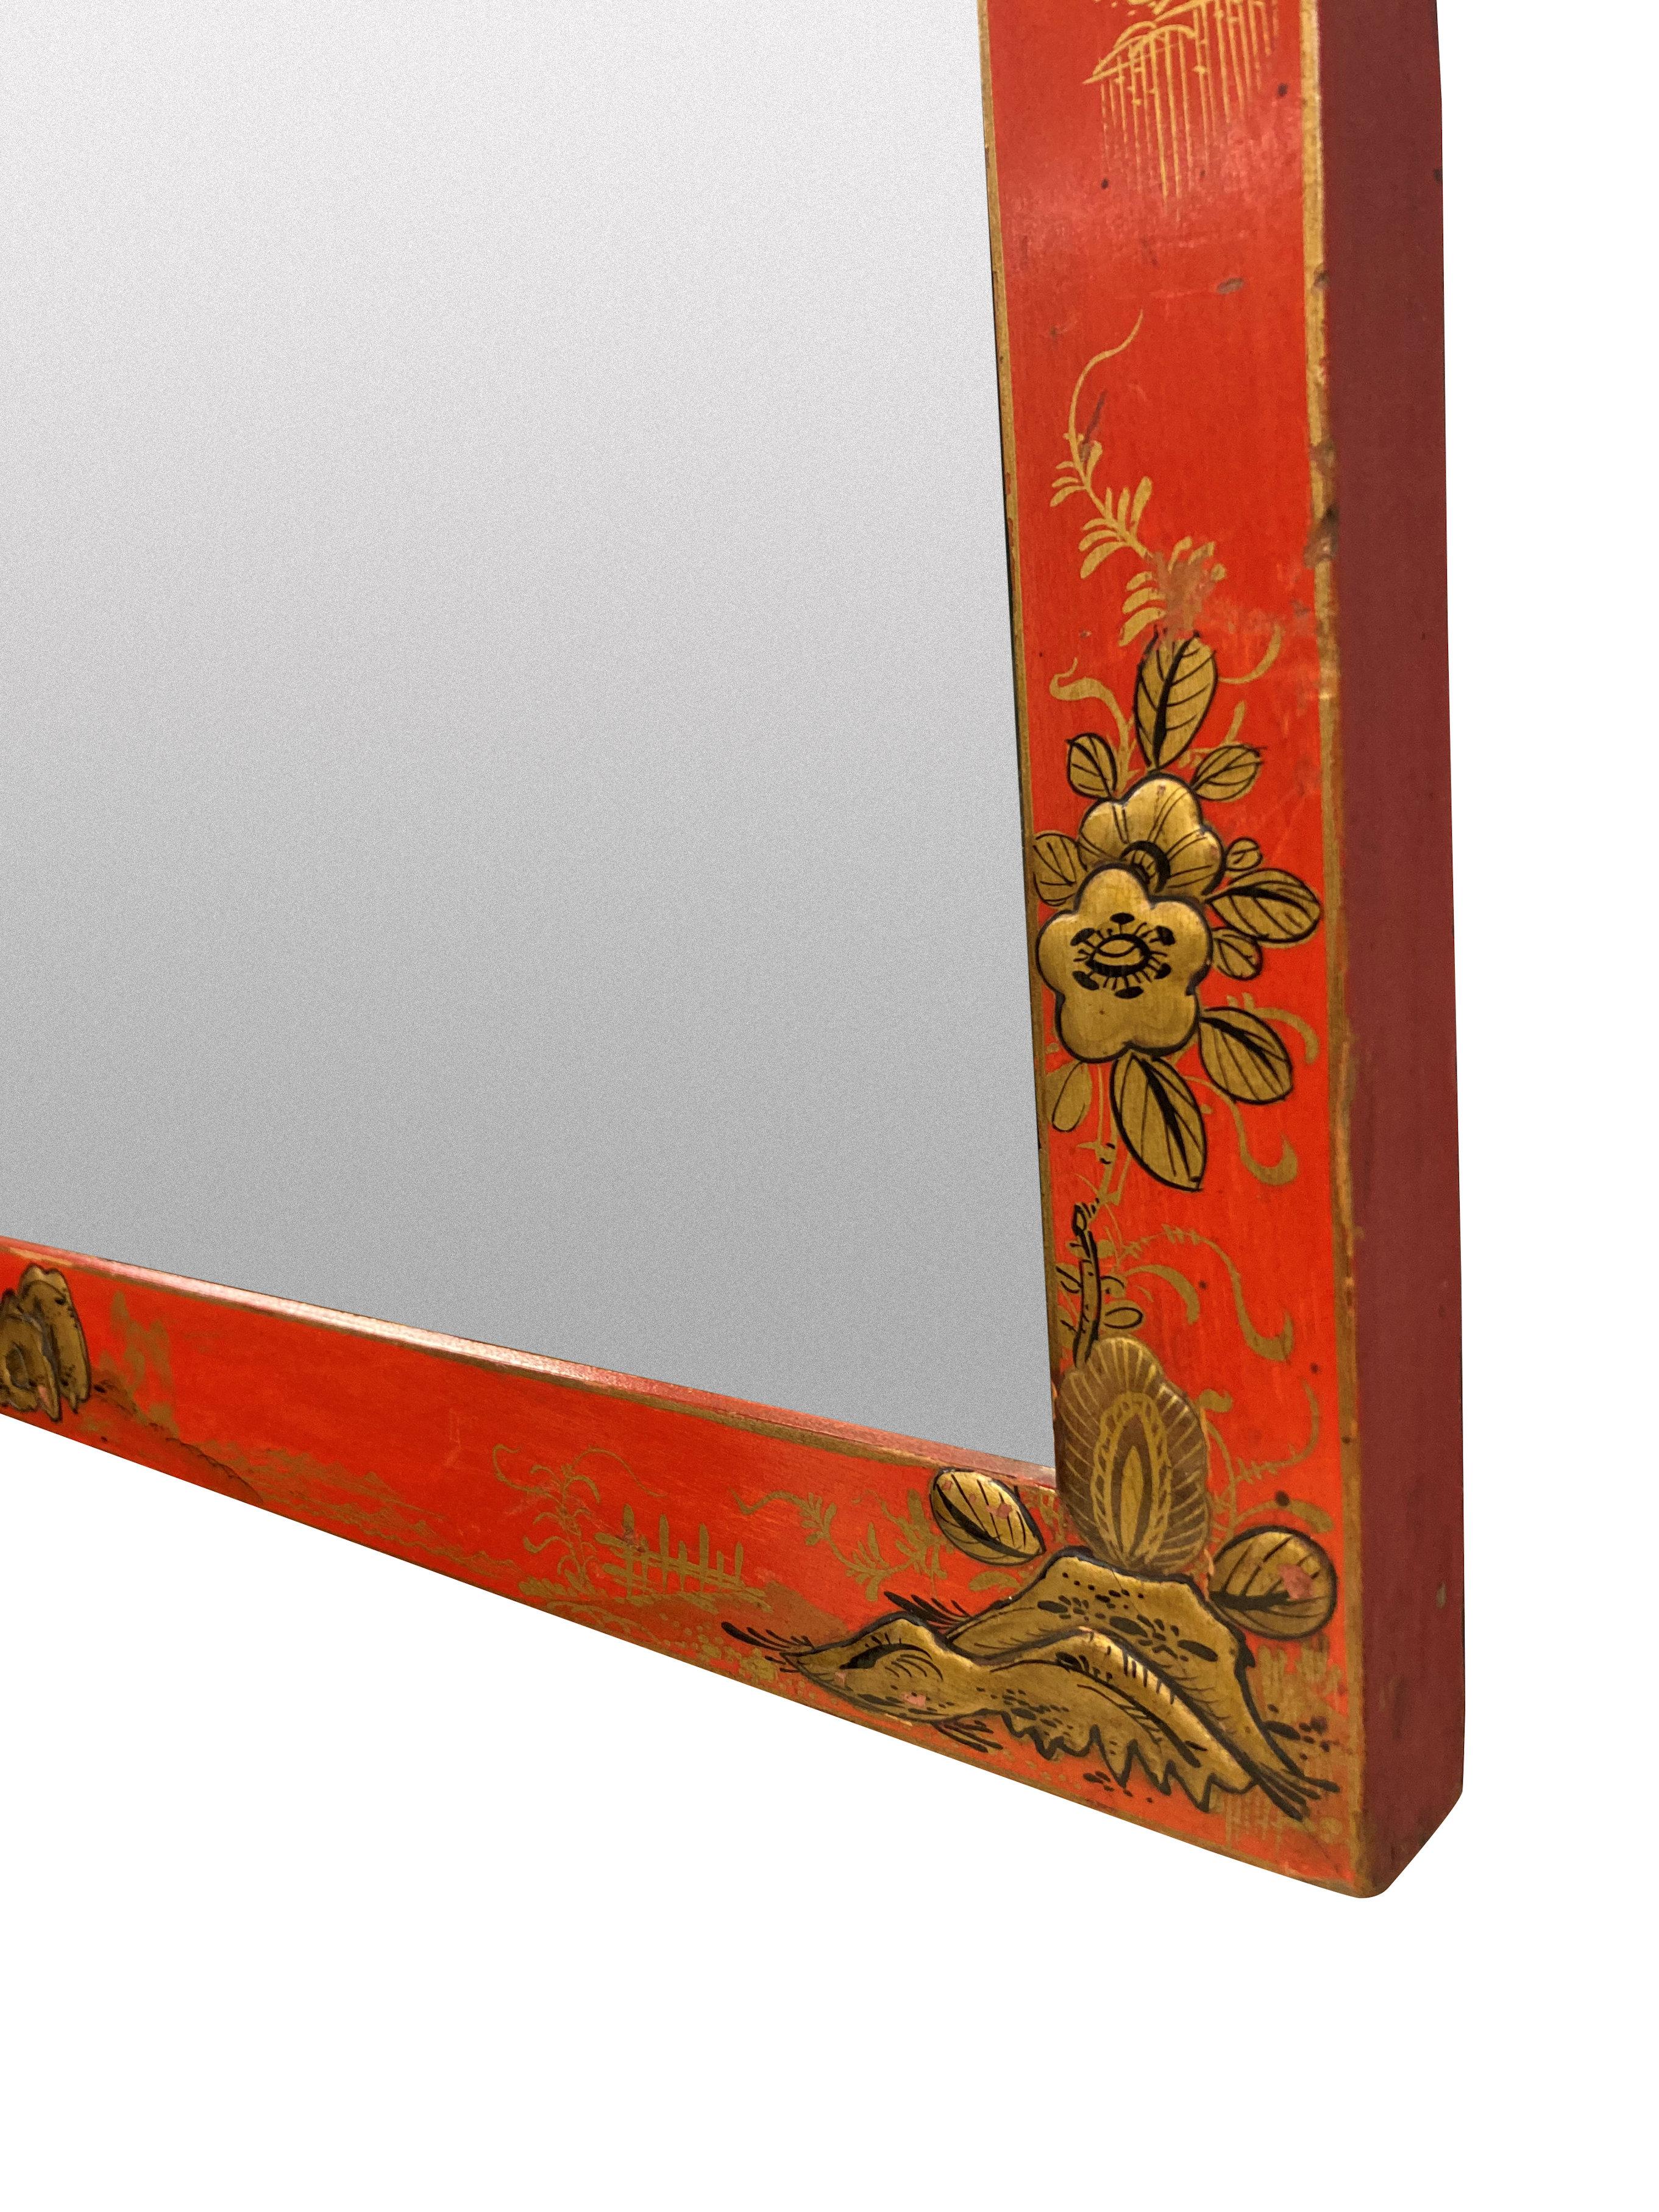 Une paire de miroirs édouardiens anglais en écarlate japonaise, chacun avec une décoration en or différente. Les assiettes sont biseautées.